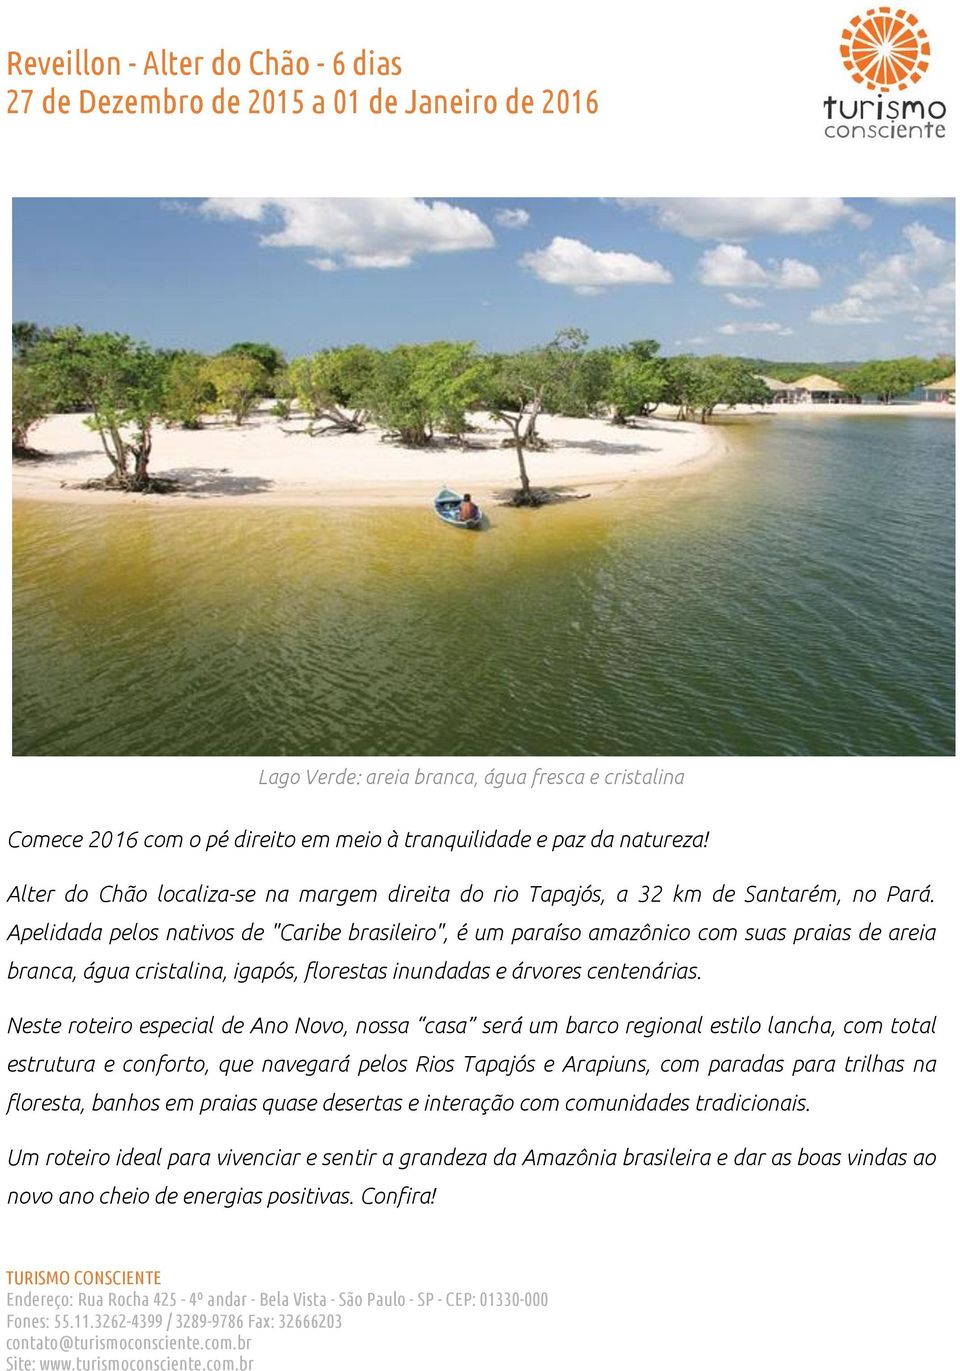 Apelidada pelos nativos de "Caribe brasileiro", é um paraíso amazônico com suas praias de areia branca, água cristalina, igapós, florestas inundadas e árvores centenárias.